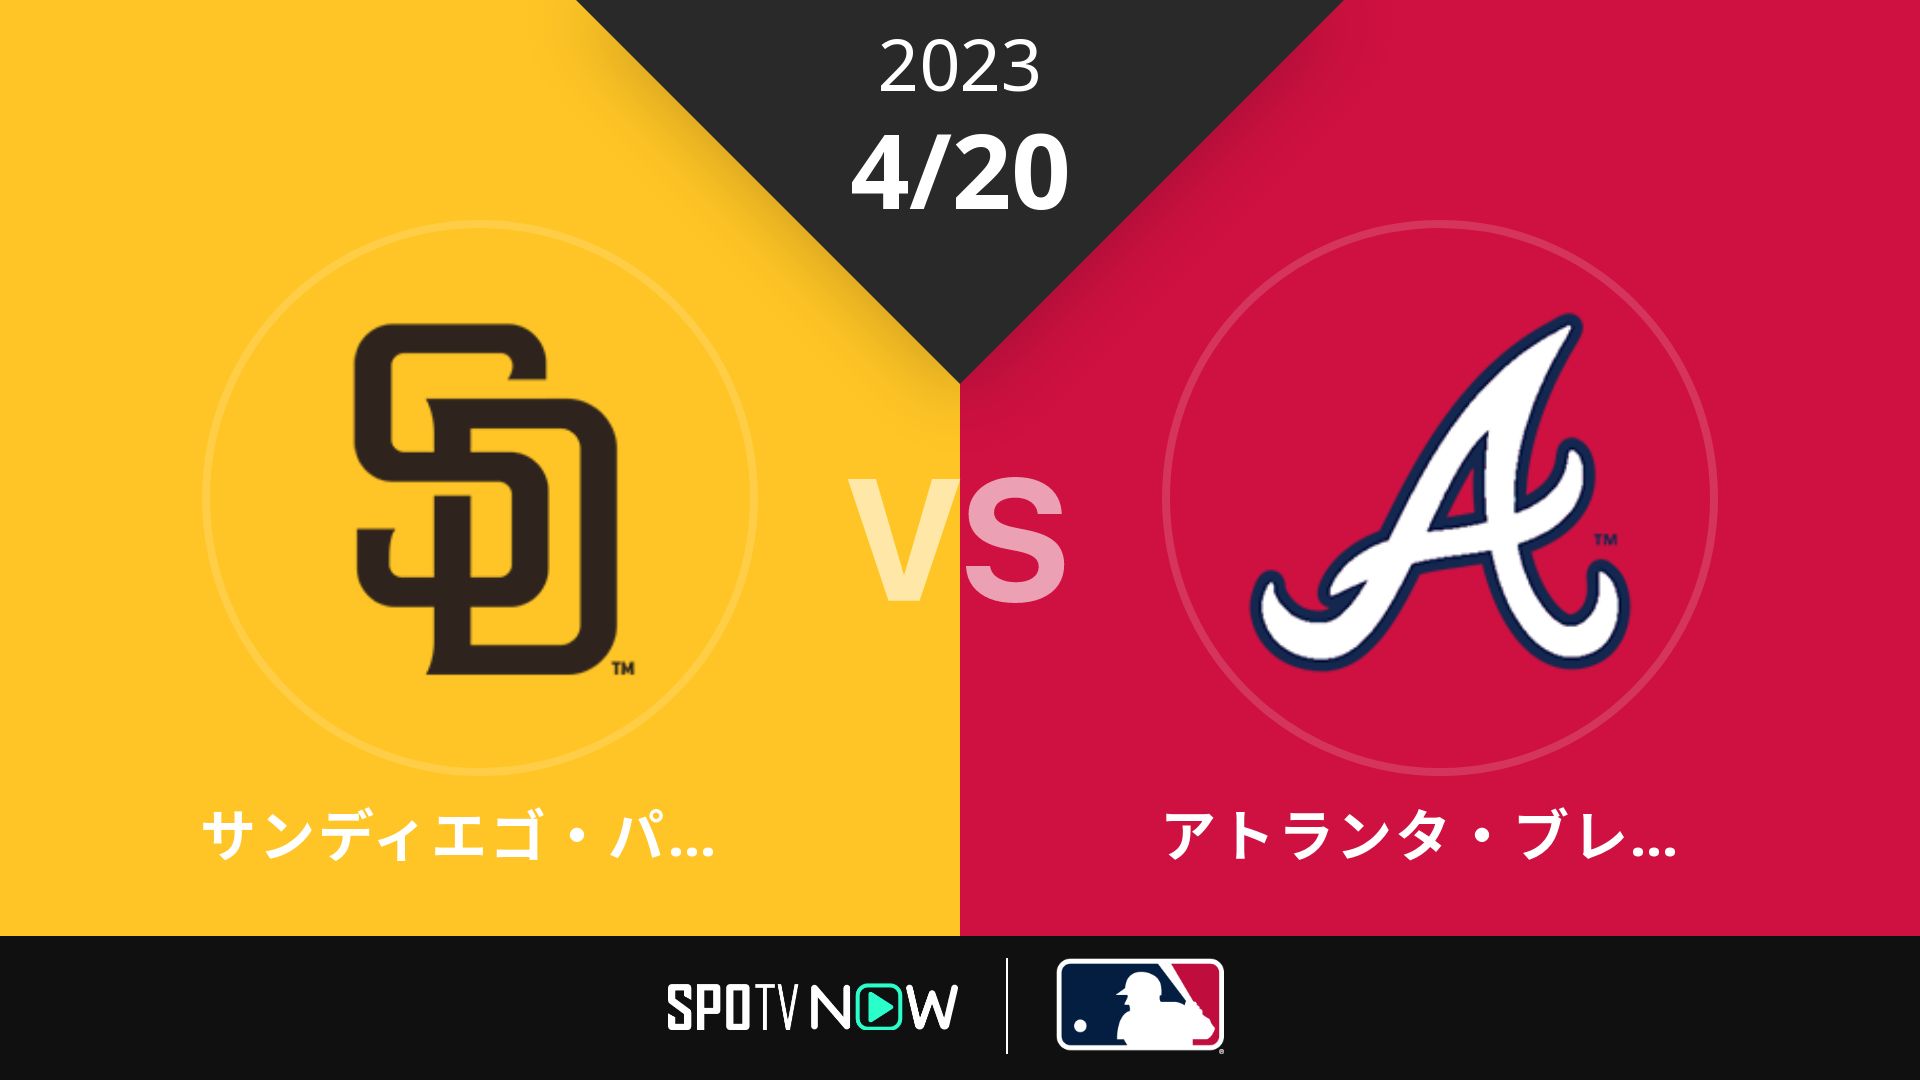 2023/4/20 パドレス vs ブレーブス [MLB]